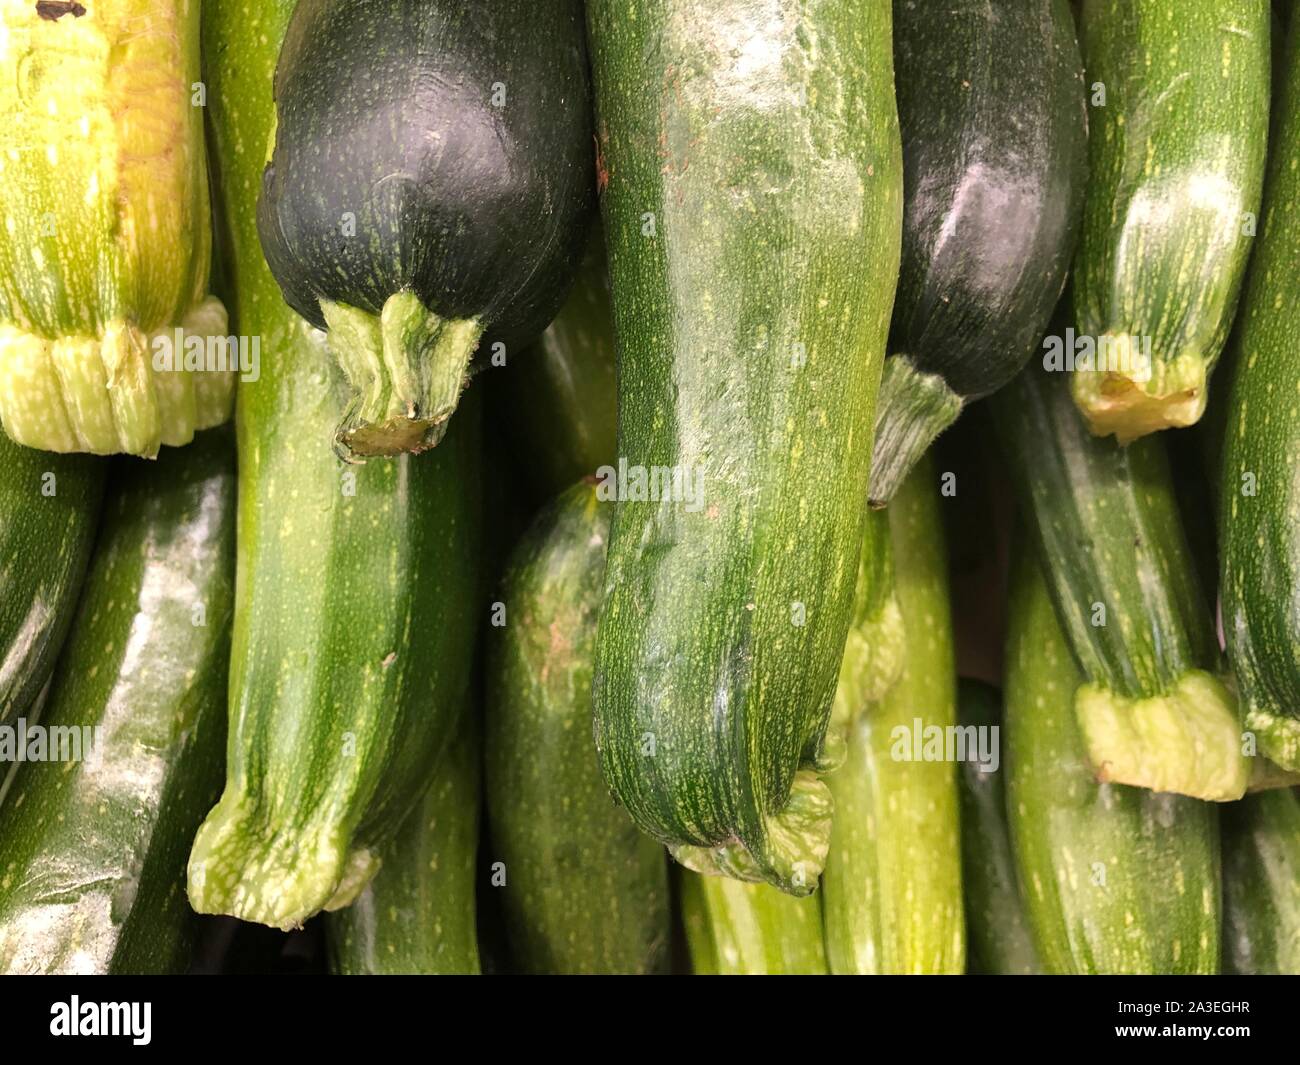 Grüne Zucchini Ernte, gesunde, nahrhafte pflanzliche Zutat für Rezepte, Diät Lebensmittel, die frisch und roh Stockfoto